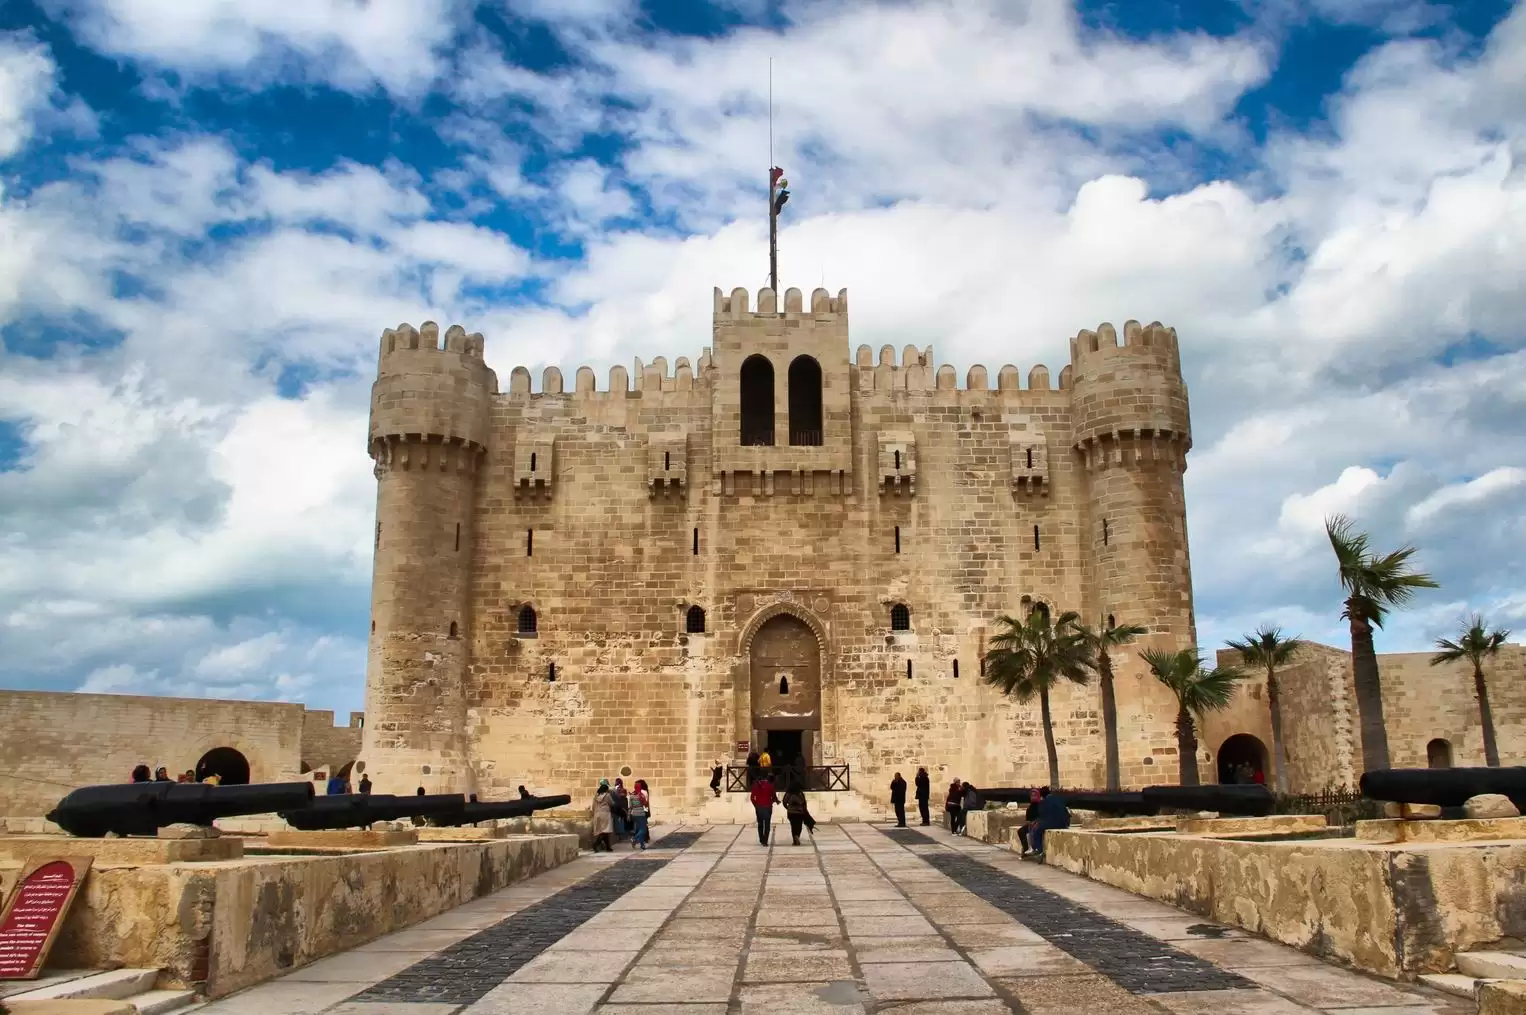 The Citadel of Qaitbay